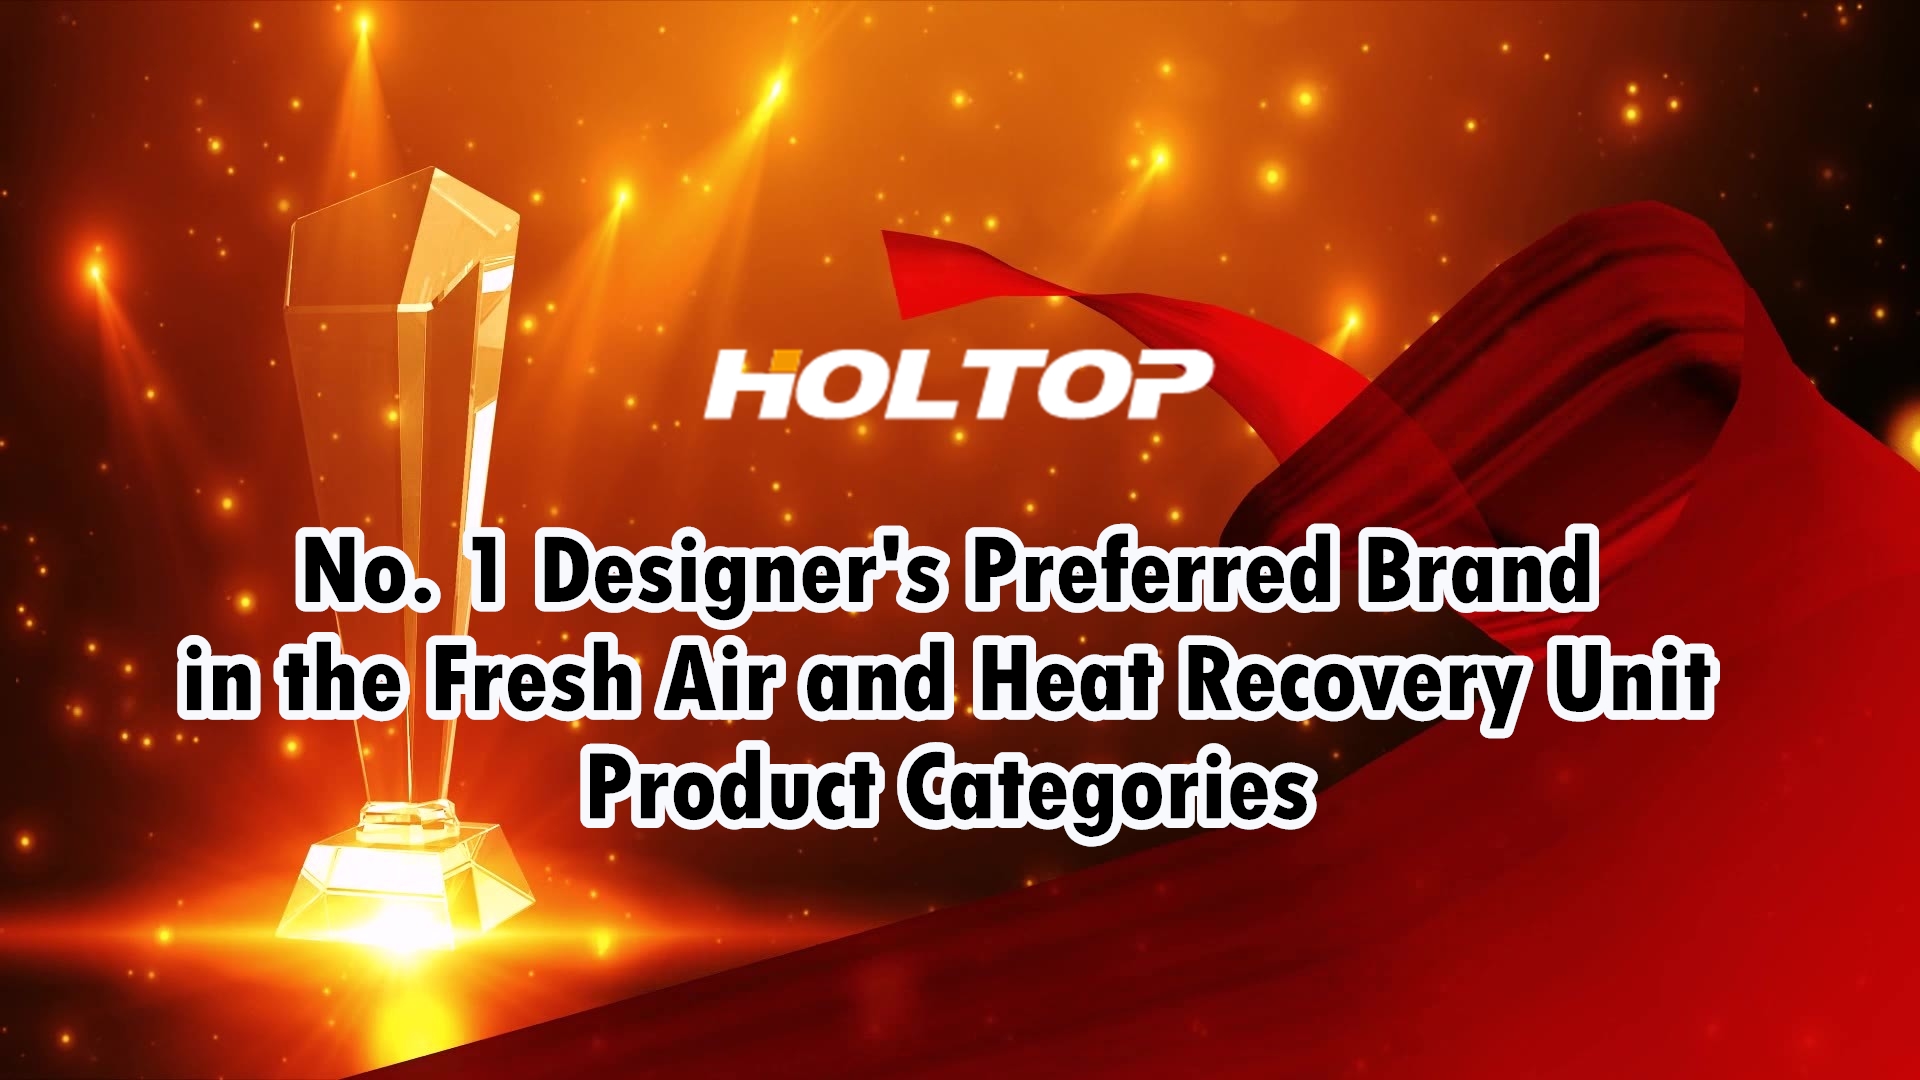 HOLTOP is het nummer 1 voorkeursmerk van ontwerpers in de productcategorieën voor frisse lucht en warmteterugwinningseenheden op de Chinese markt